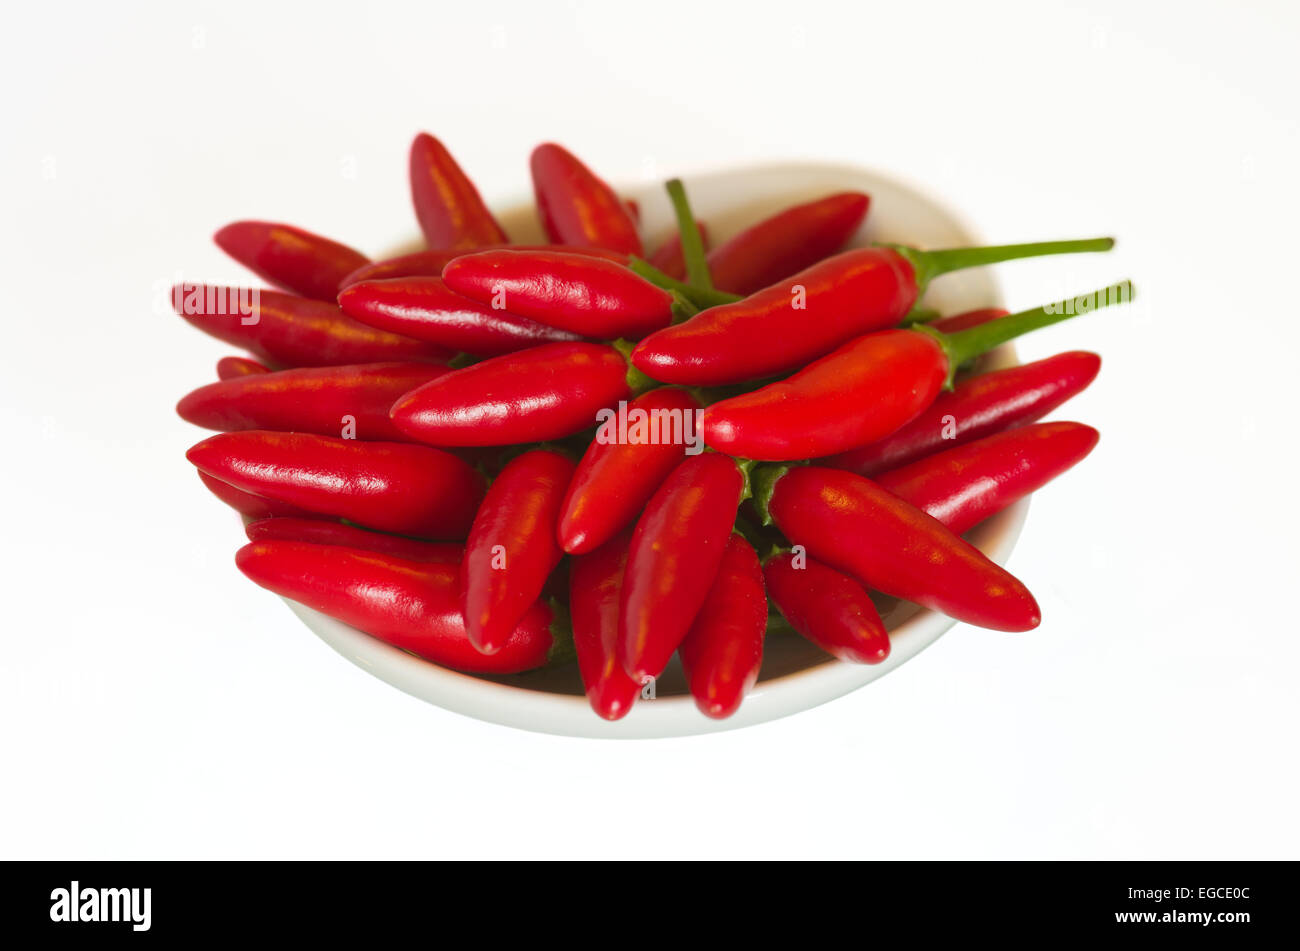 Bowl of chilis - Capsicum sp. Stock Photo